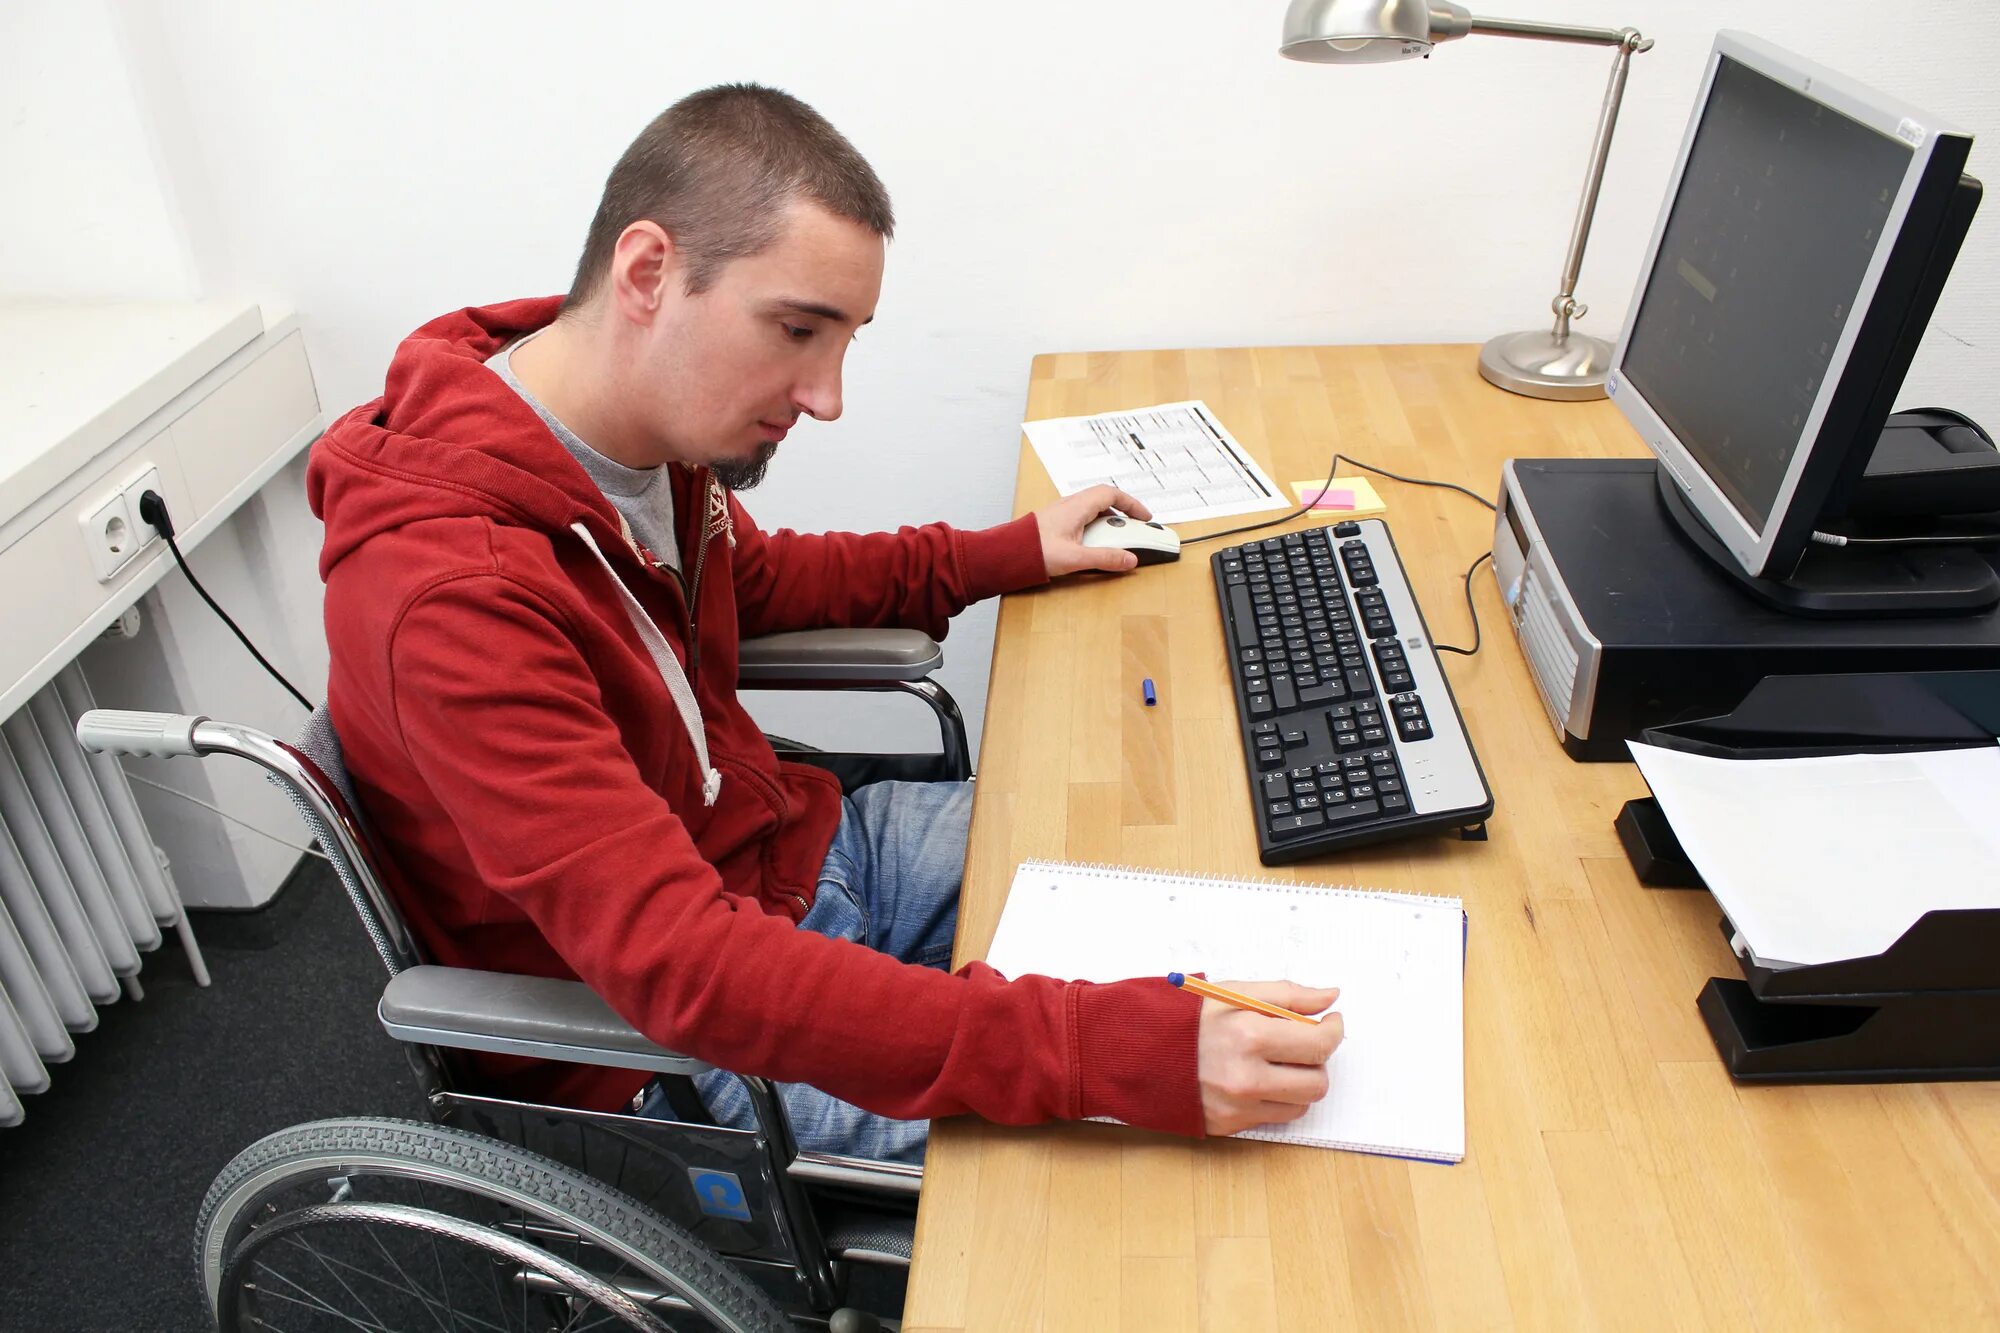 Работа для ограниченных людей. Инвалид за компьютером. Компьютеры для людей с ограниченными возможностями. Компьютер для инвалидов. Трудоустройство инвалидов.